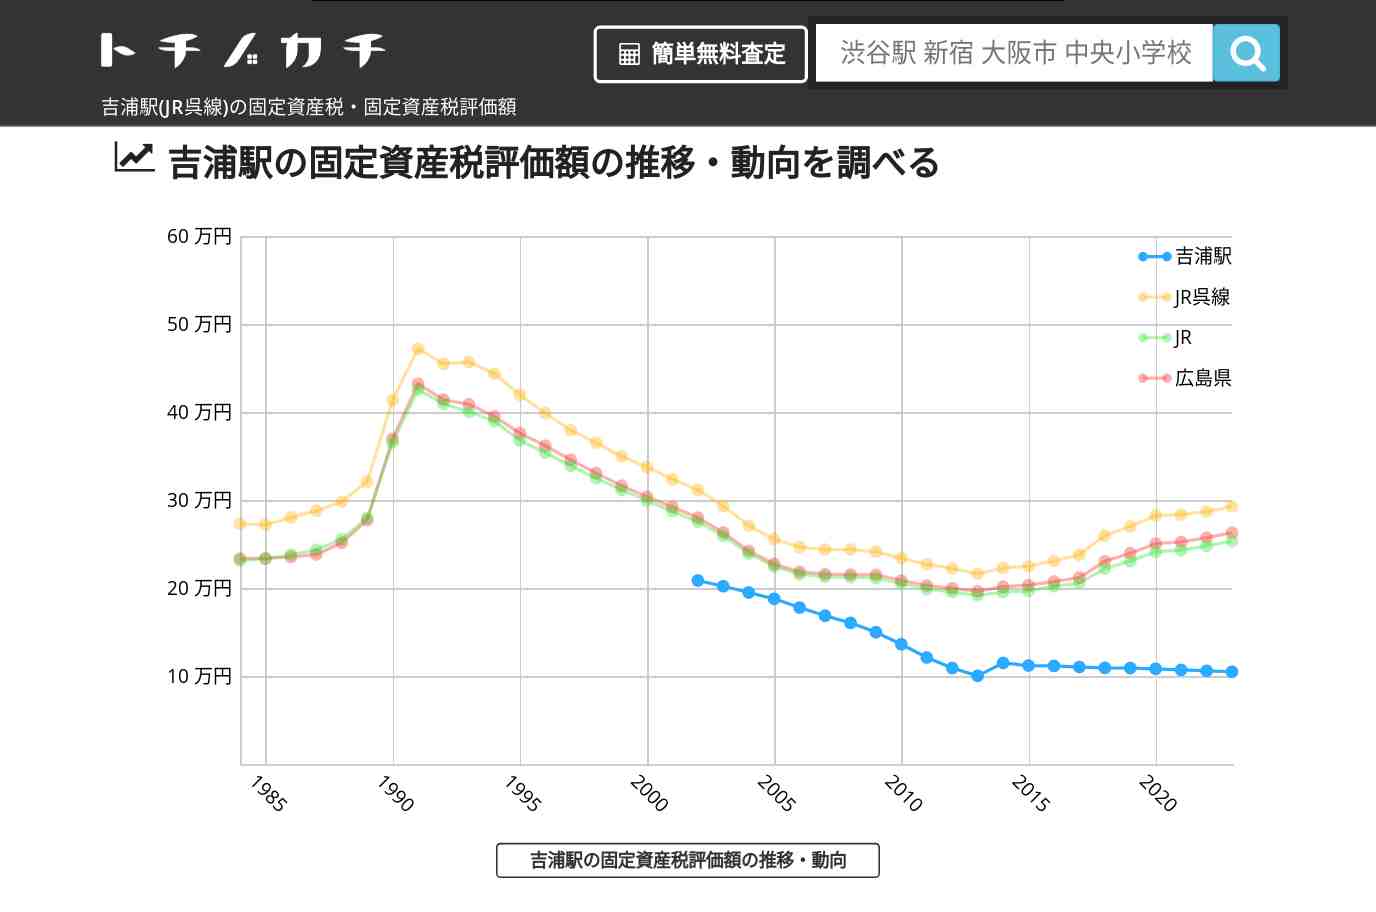 吉浦駅(JR呉線)の固定資産税・固定資産税評価額 | トチノカチ